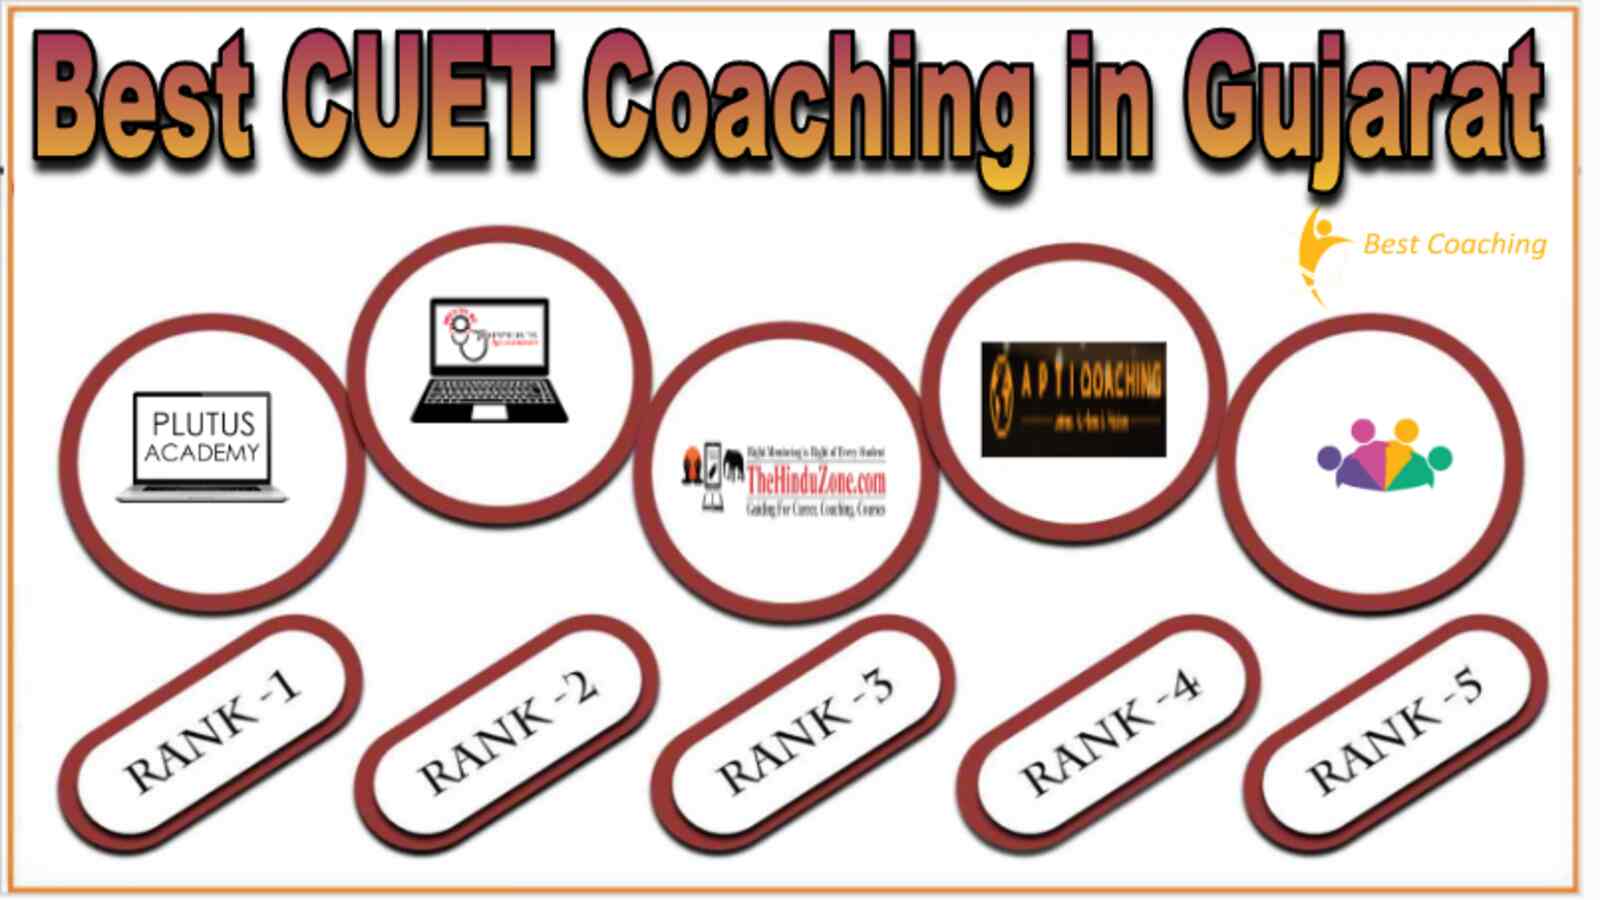 Best CUET Coaching in Gujarat